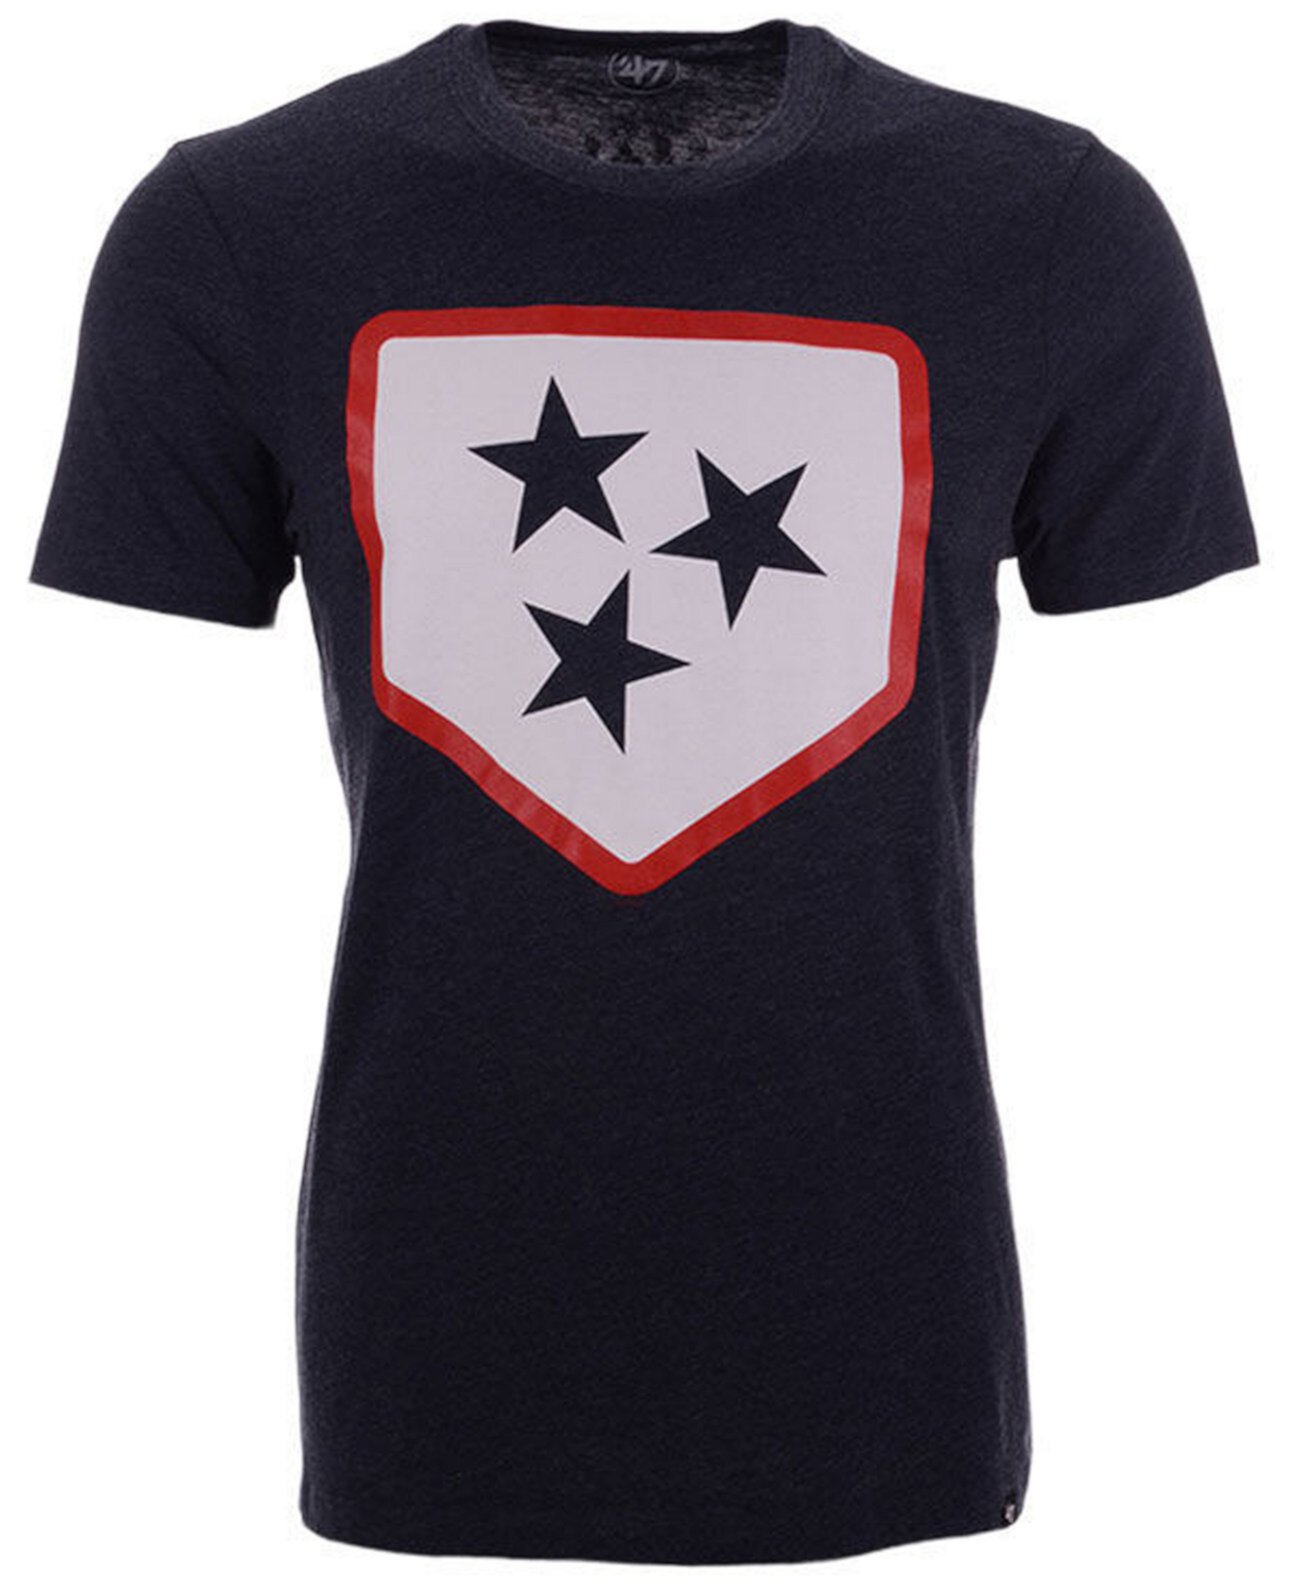 Мужская футболка с логотипом клуба Nashville Sounds '47 Brand